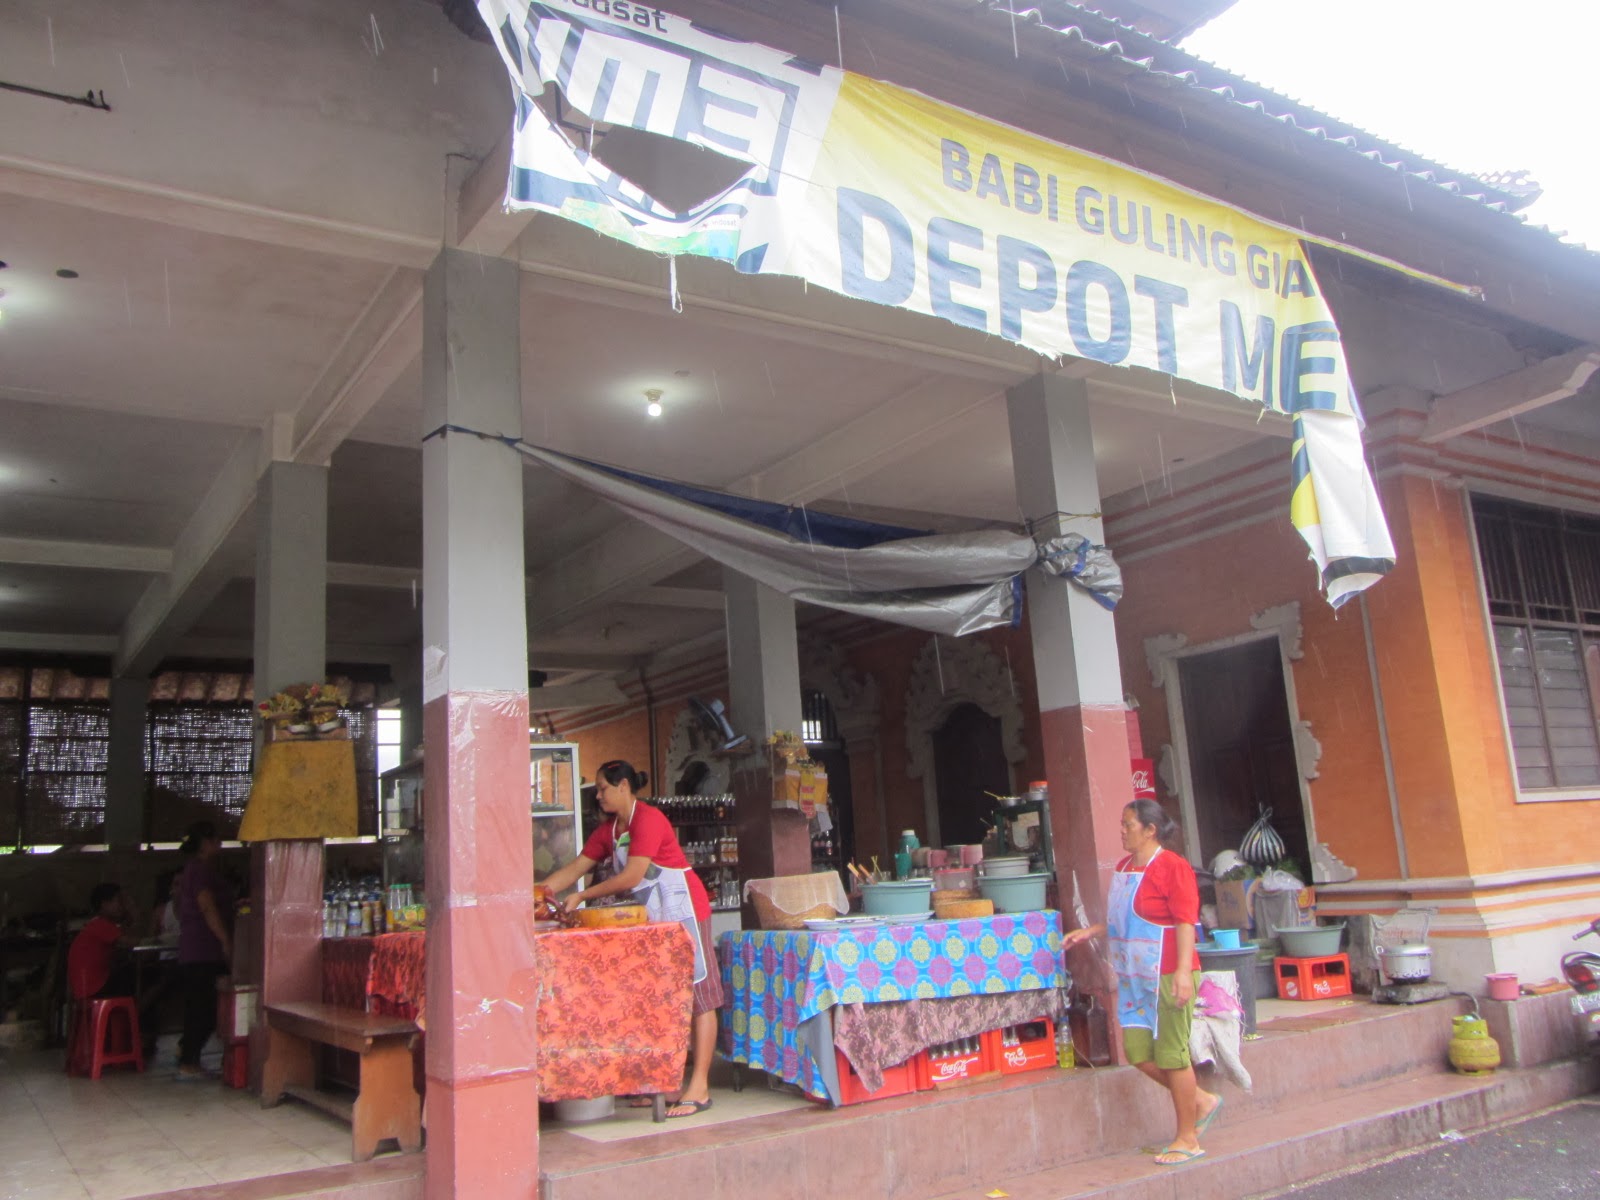 Indonesia Depot Melati